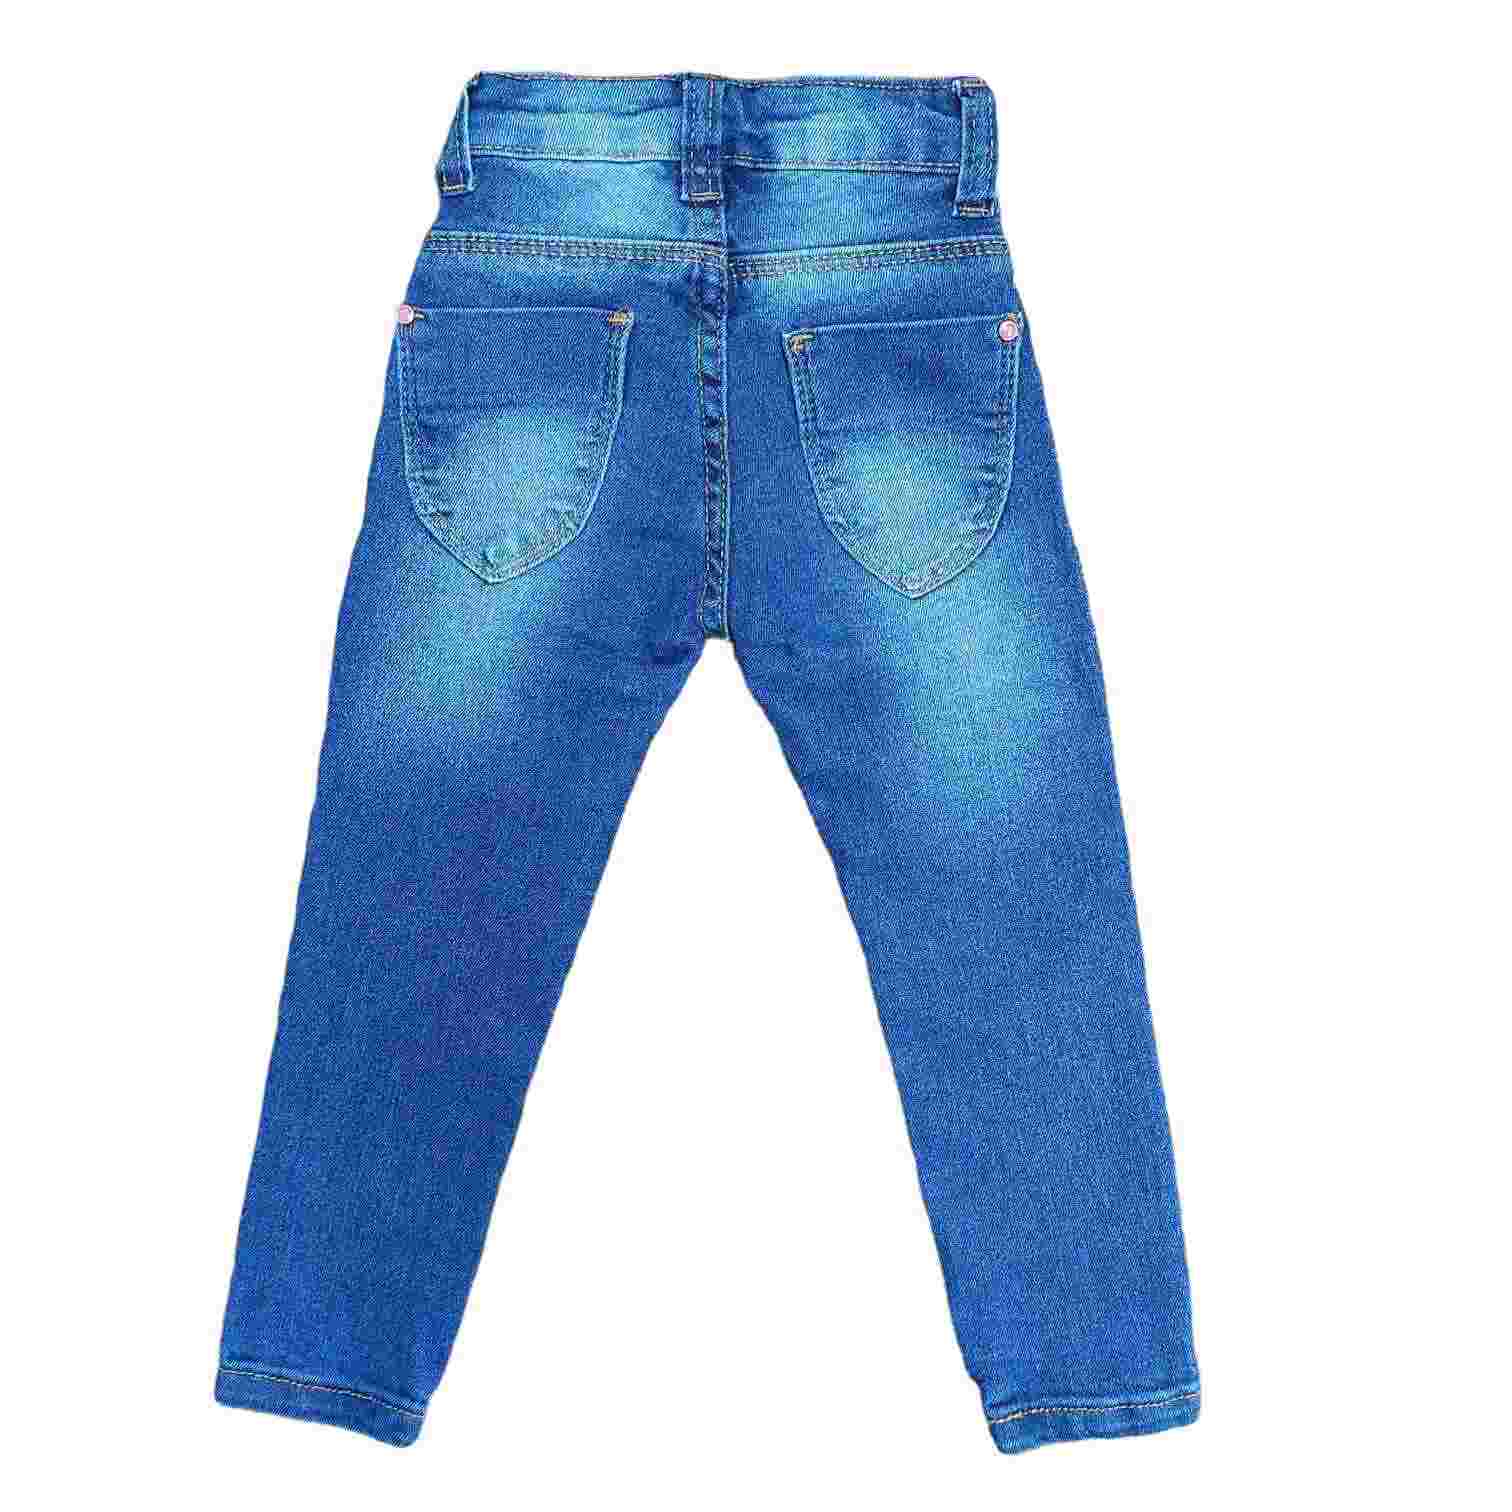 Calça Jeans Básica Feminina Infantil - Lojinha da Vivi